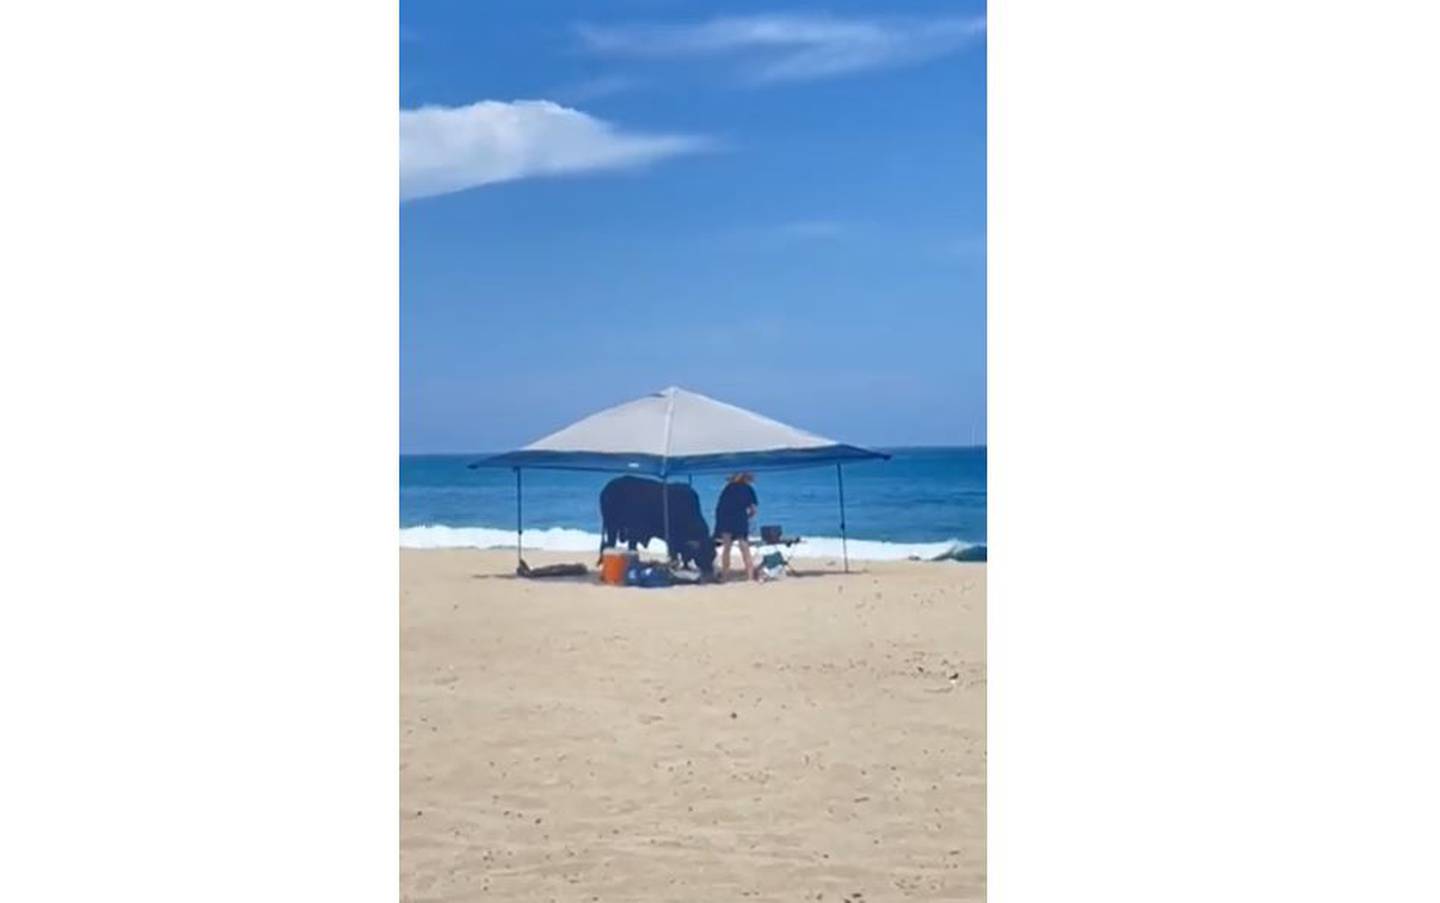 Un toro embistió a una persona en una playa del estado mexicano de Baja California Sur el sábado 11 de mayo, mientras otros turistas observaban horrorizados, según informes locales.